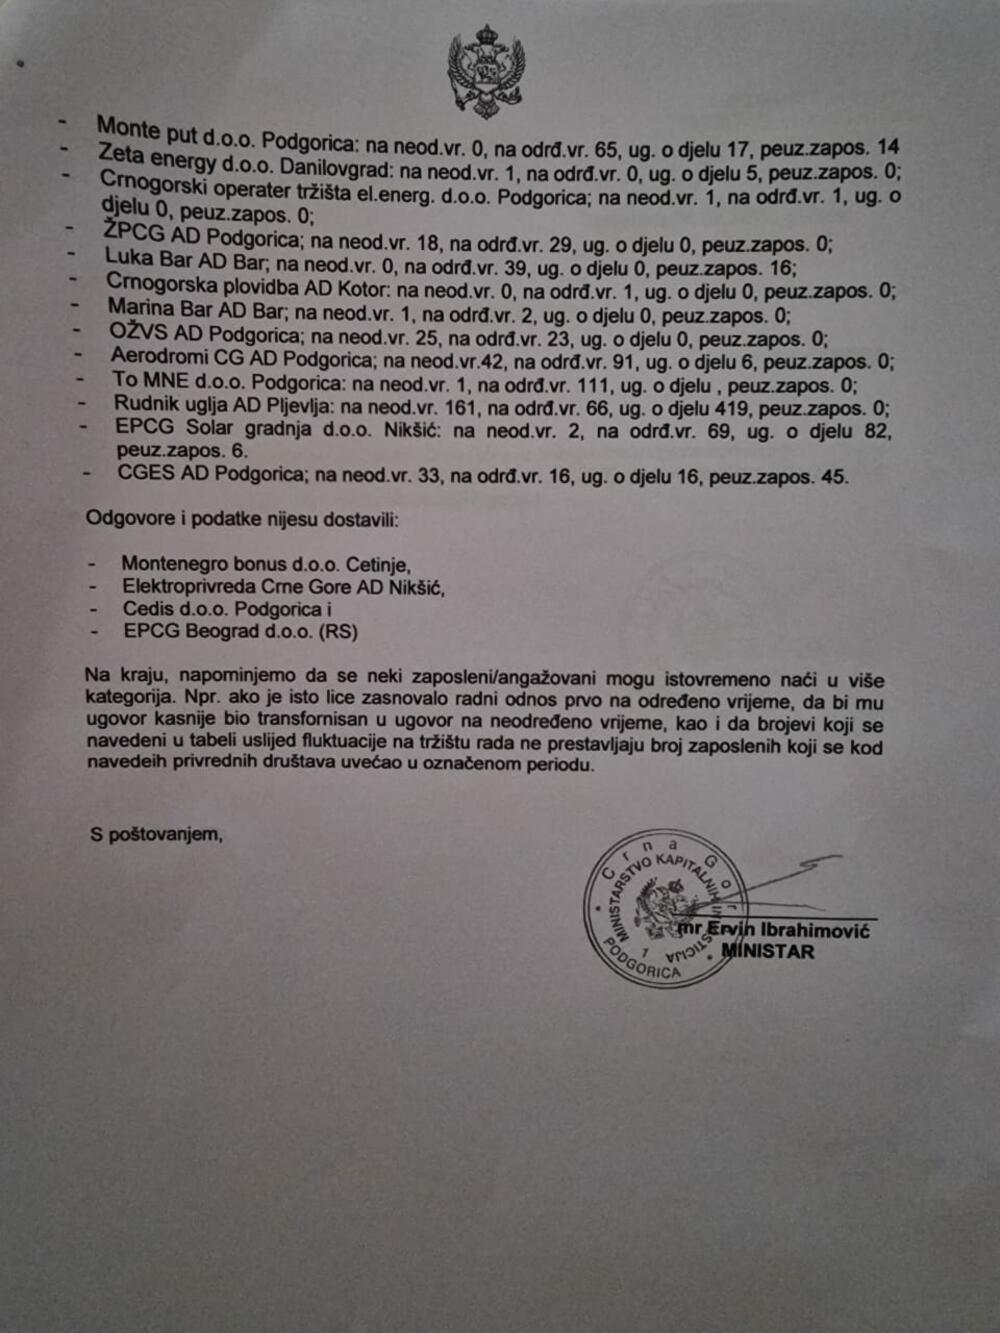 <p>Informacije, kako navode, nisu dostavili Montenegro bonus DOO Cetinje, Elektroprivreda Crne Gore AD Nikšić, CEDIS DOO Podgorica i EPCG Beograd DOO</p>